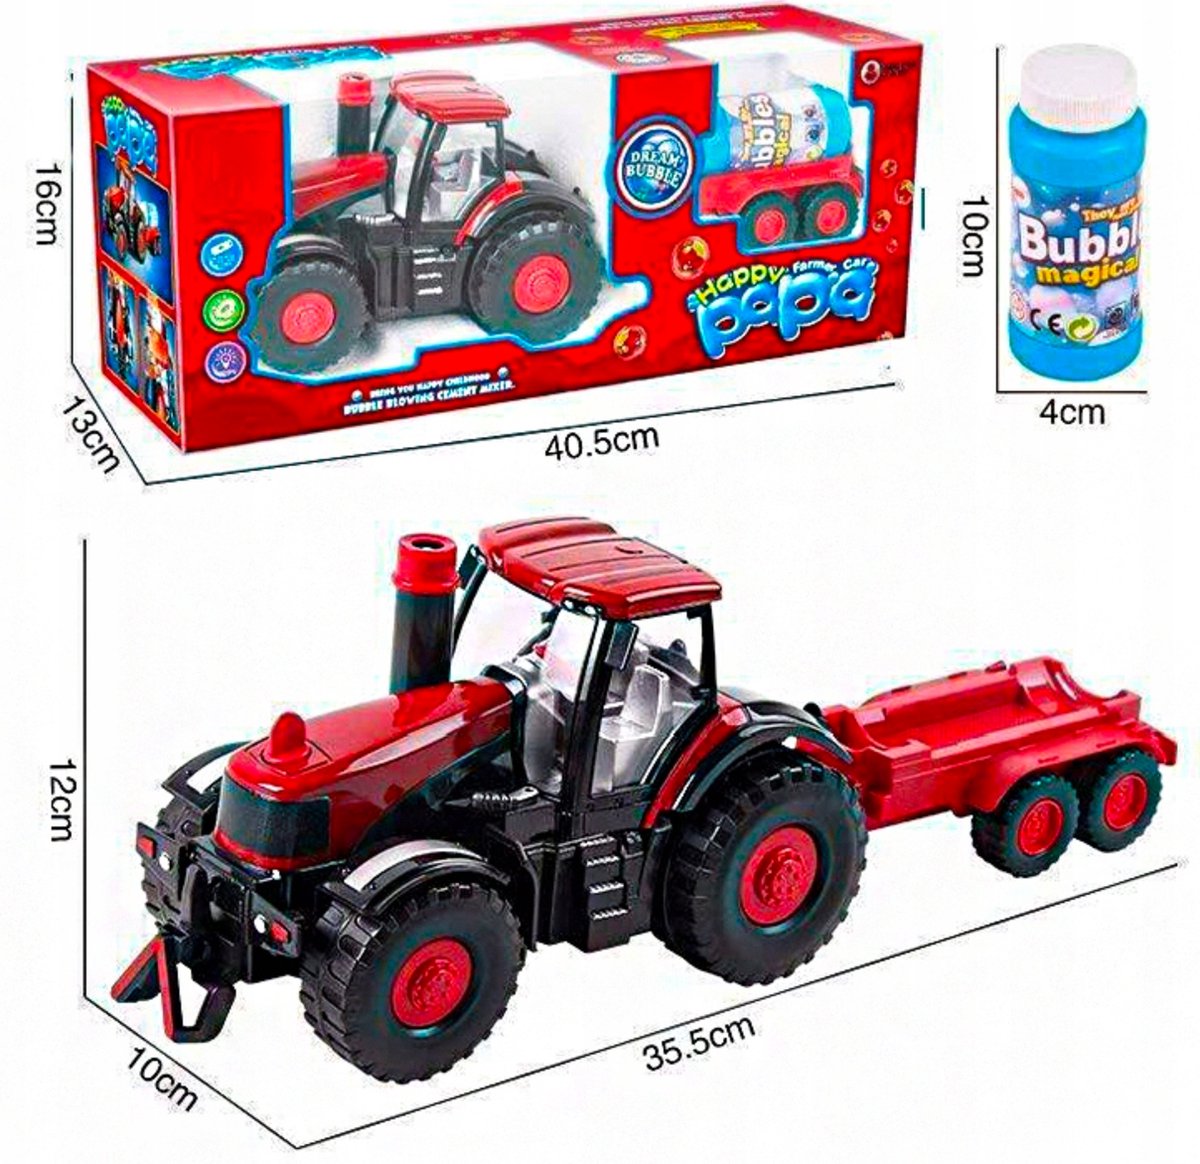 Interactieve tractor met afneembare aanhanger - Tractor - Speelgoed tractor - Sinterklaas - Schoencadeautjes sinterklaas - Bellenblazen.